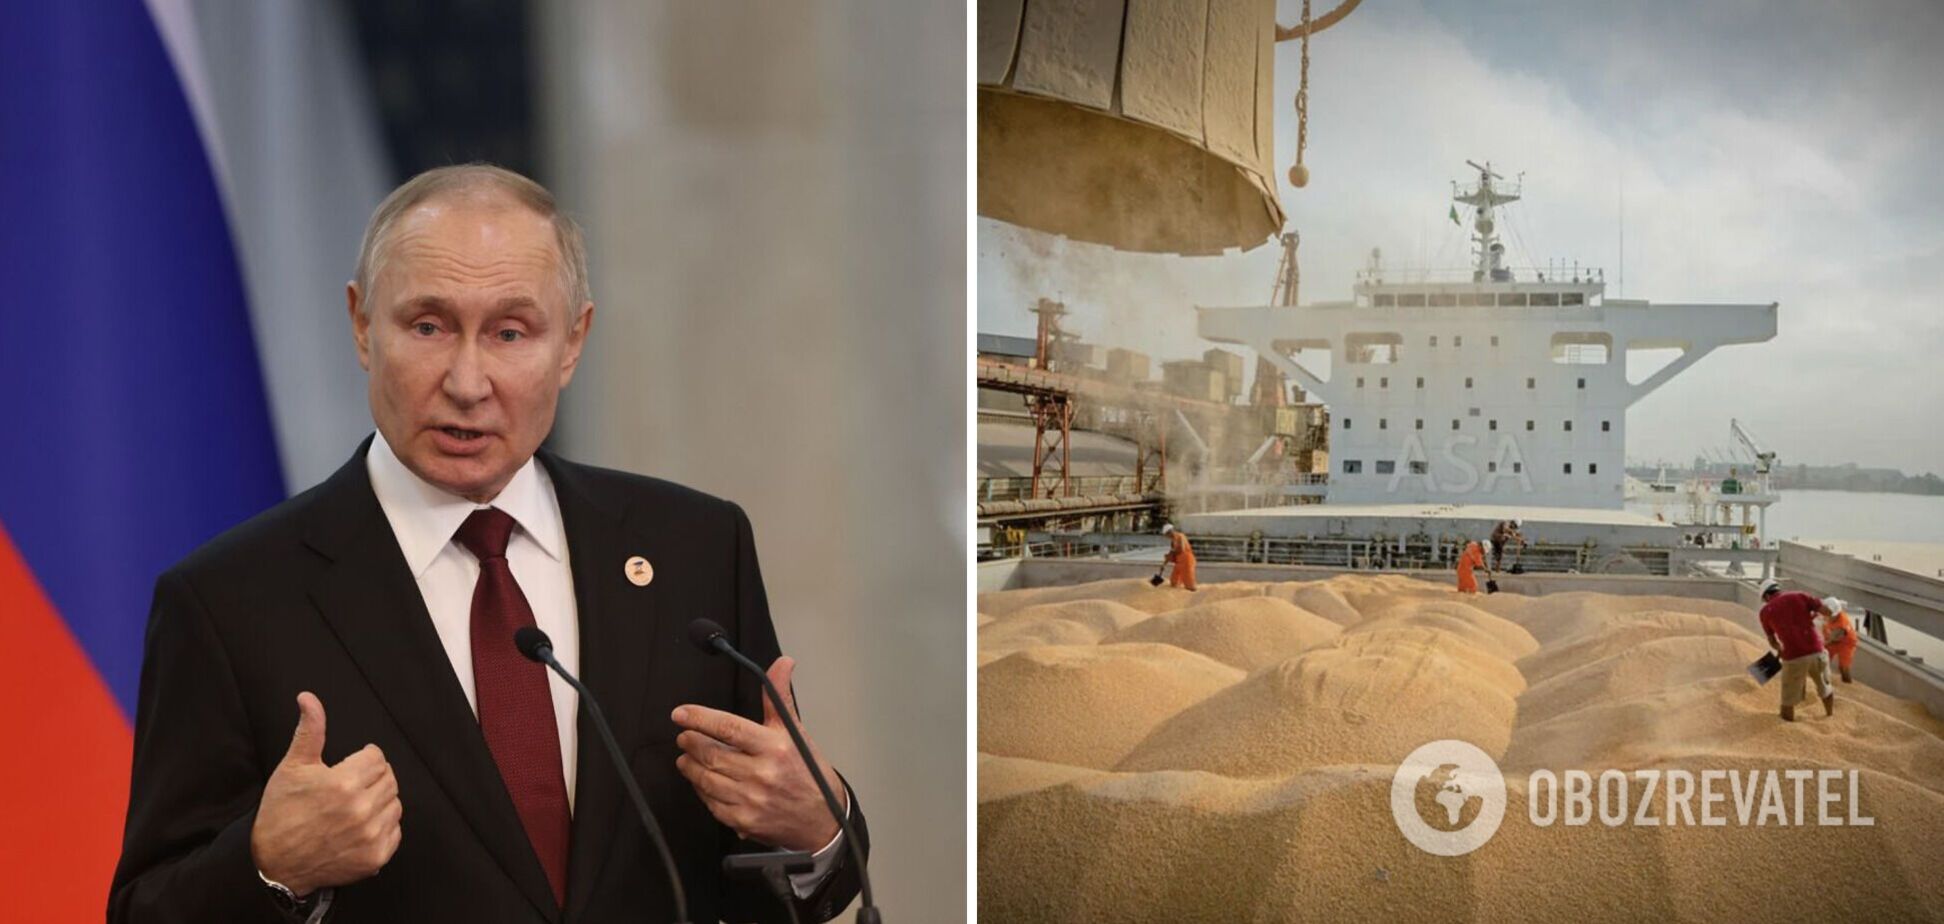 'Цены на зерно выросли, мы получим больше доходов': Путин признал коммерческий интерес России в срыве Зерновой сделки. Видео